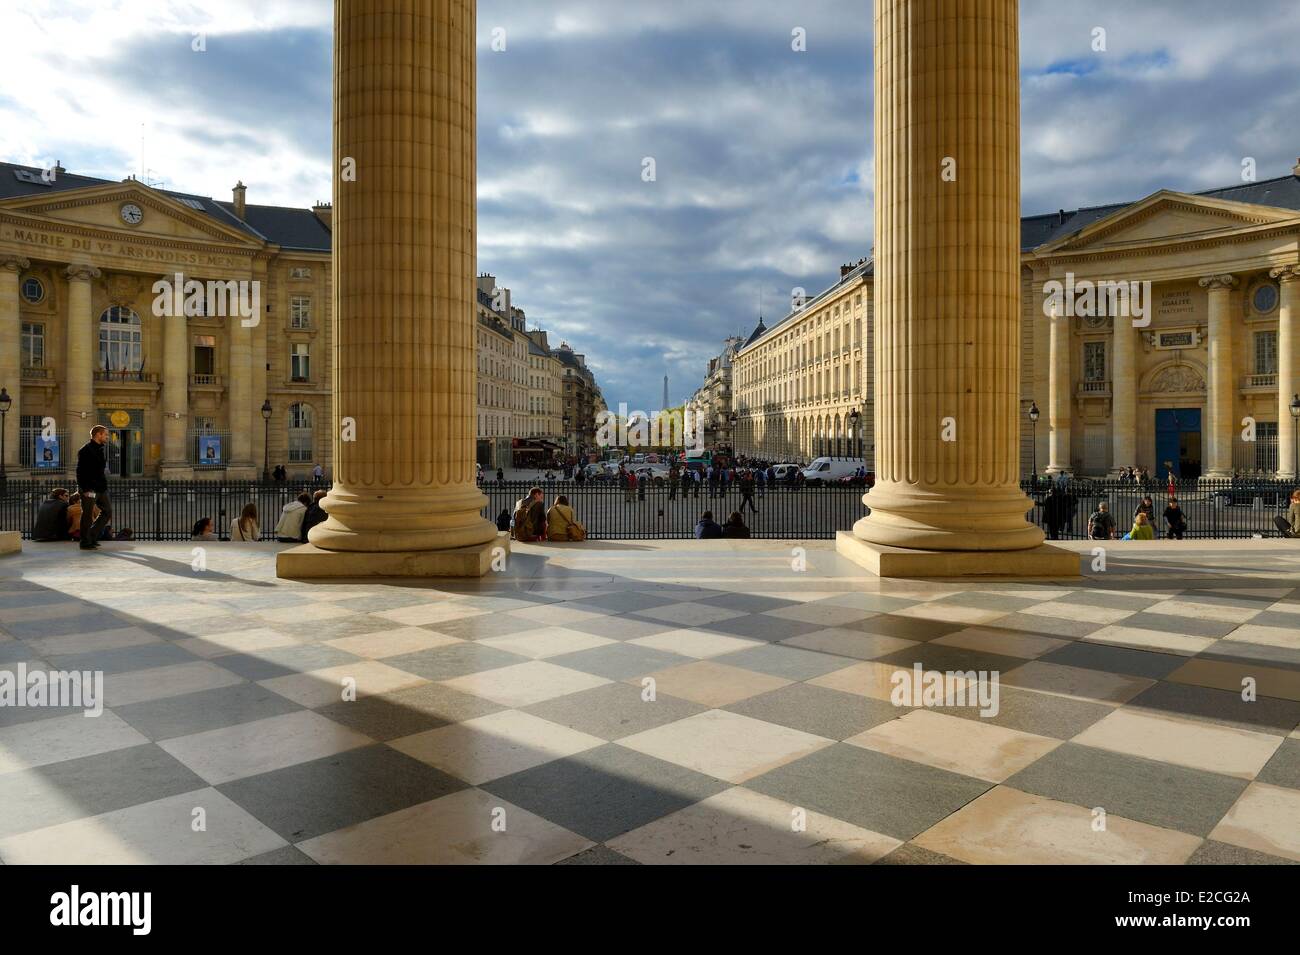 Frankreich, Paris, der korinthischen Säulen des Giebels des Pantheons zur Soufflot Straße, das Rathaus des 5. Arrondissements auf der linken Seite und dem Eingang zur juristischen Fakultät auf der rechten Seite Stockfoto